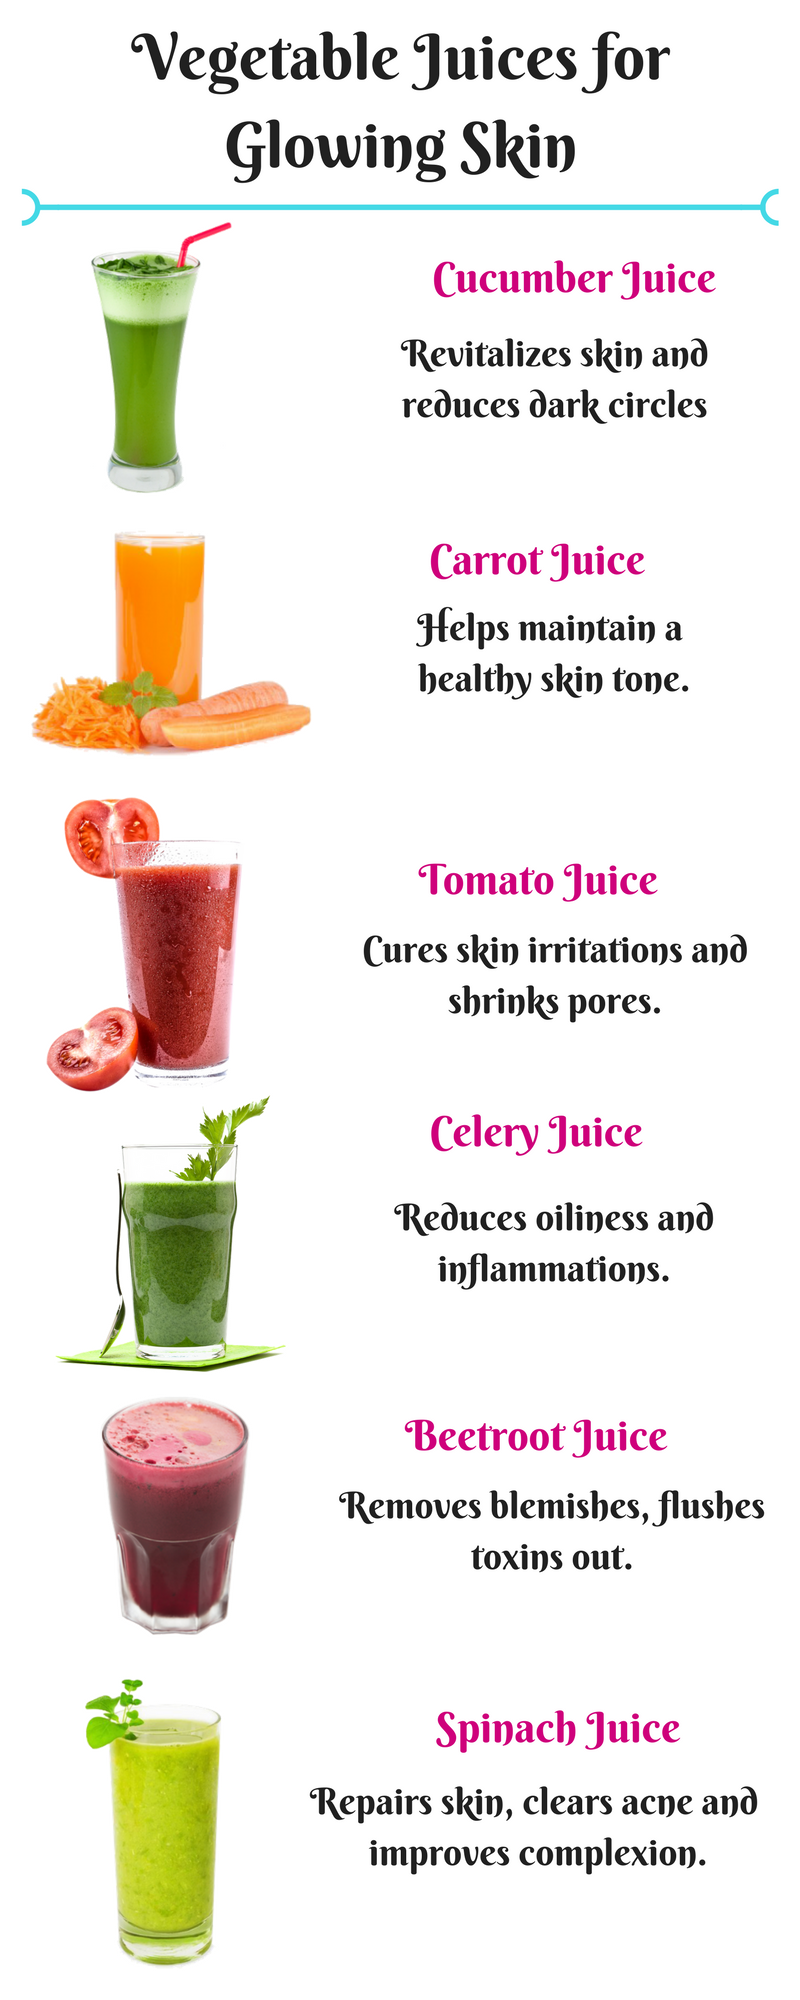 12 Best Veg & Fruit Juices for a Glowing Skin - UV Hero - 12 Best Veg & Fruit Juices for a Glowing Skin - UV Hero -   17 beauty Skin drink ideas